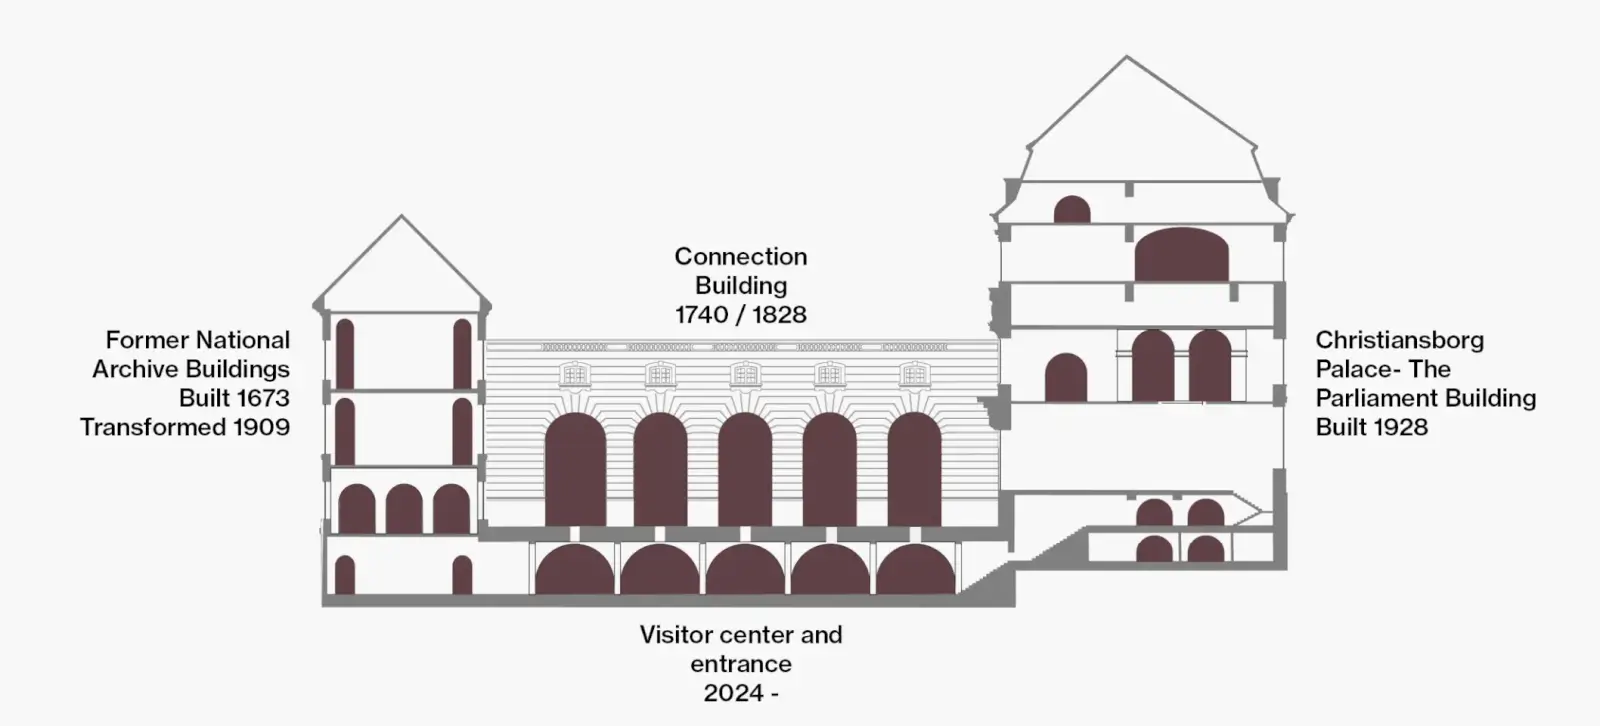 文化遺產建築和新建築透過拱門這一共同語彙相互連結